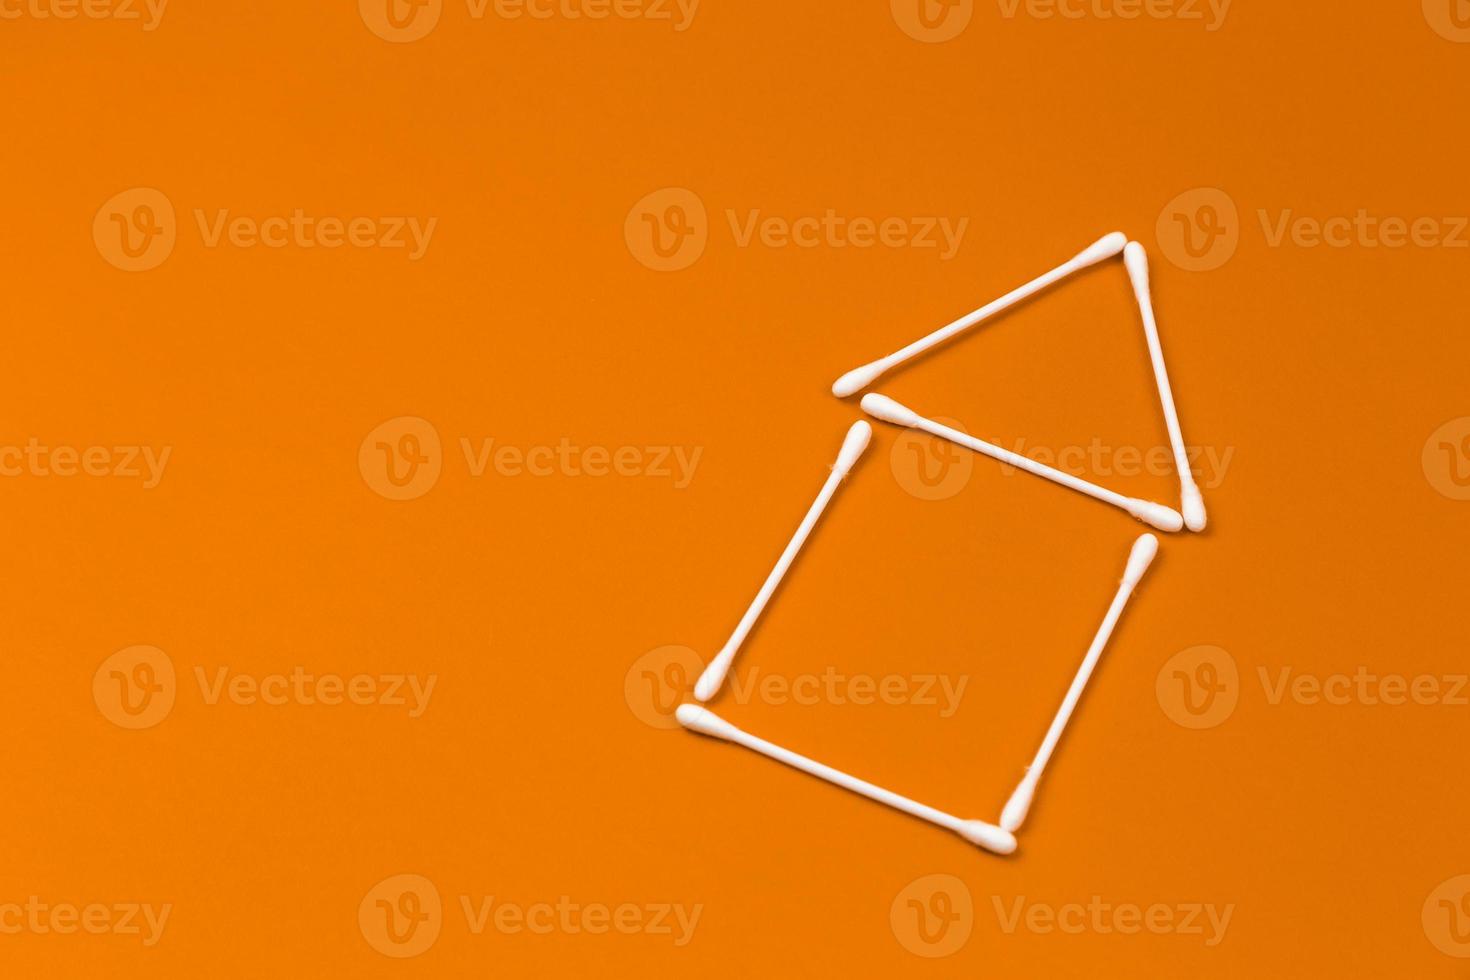 öronpinnar i bomull ordnade som ett litet hus på orange bakgrund foto